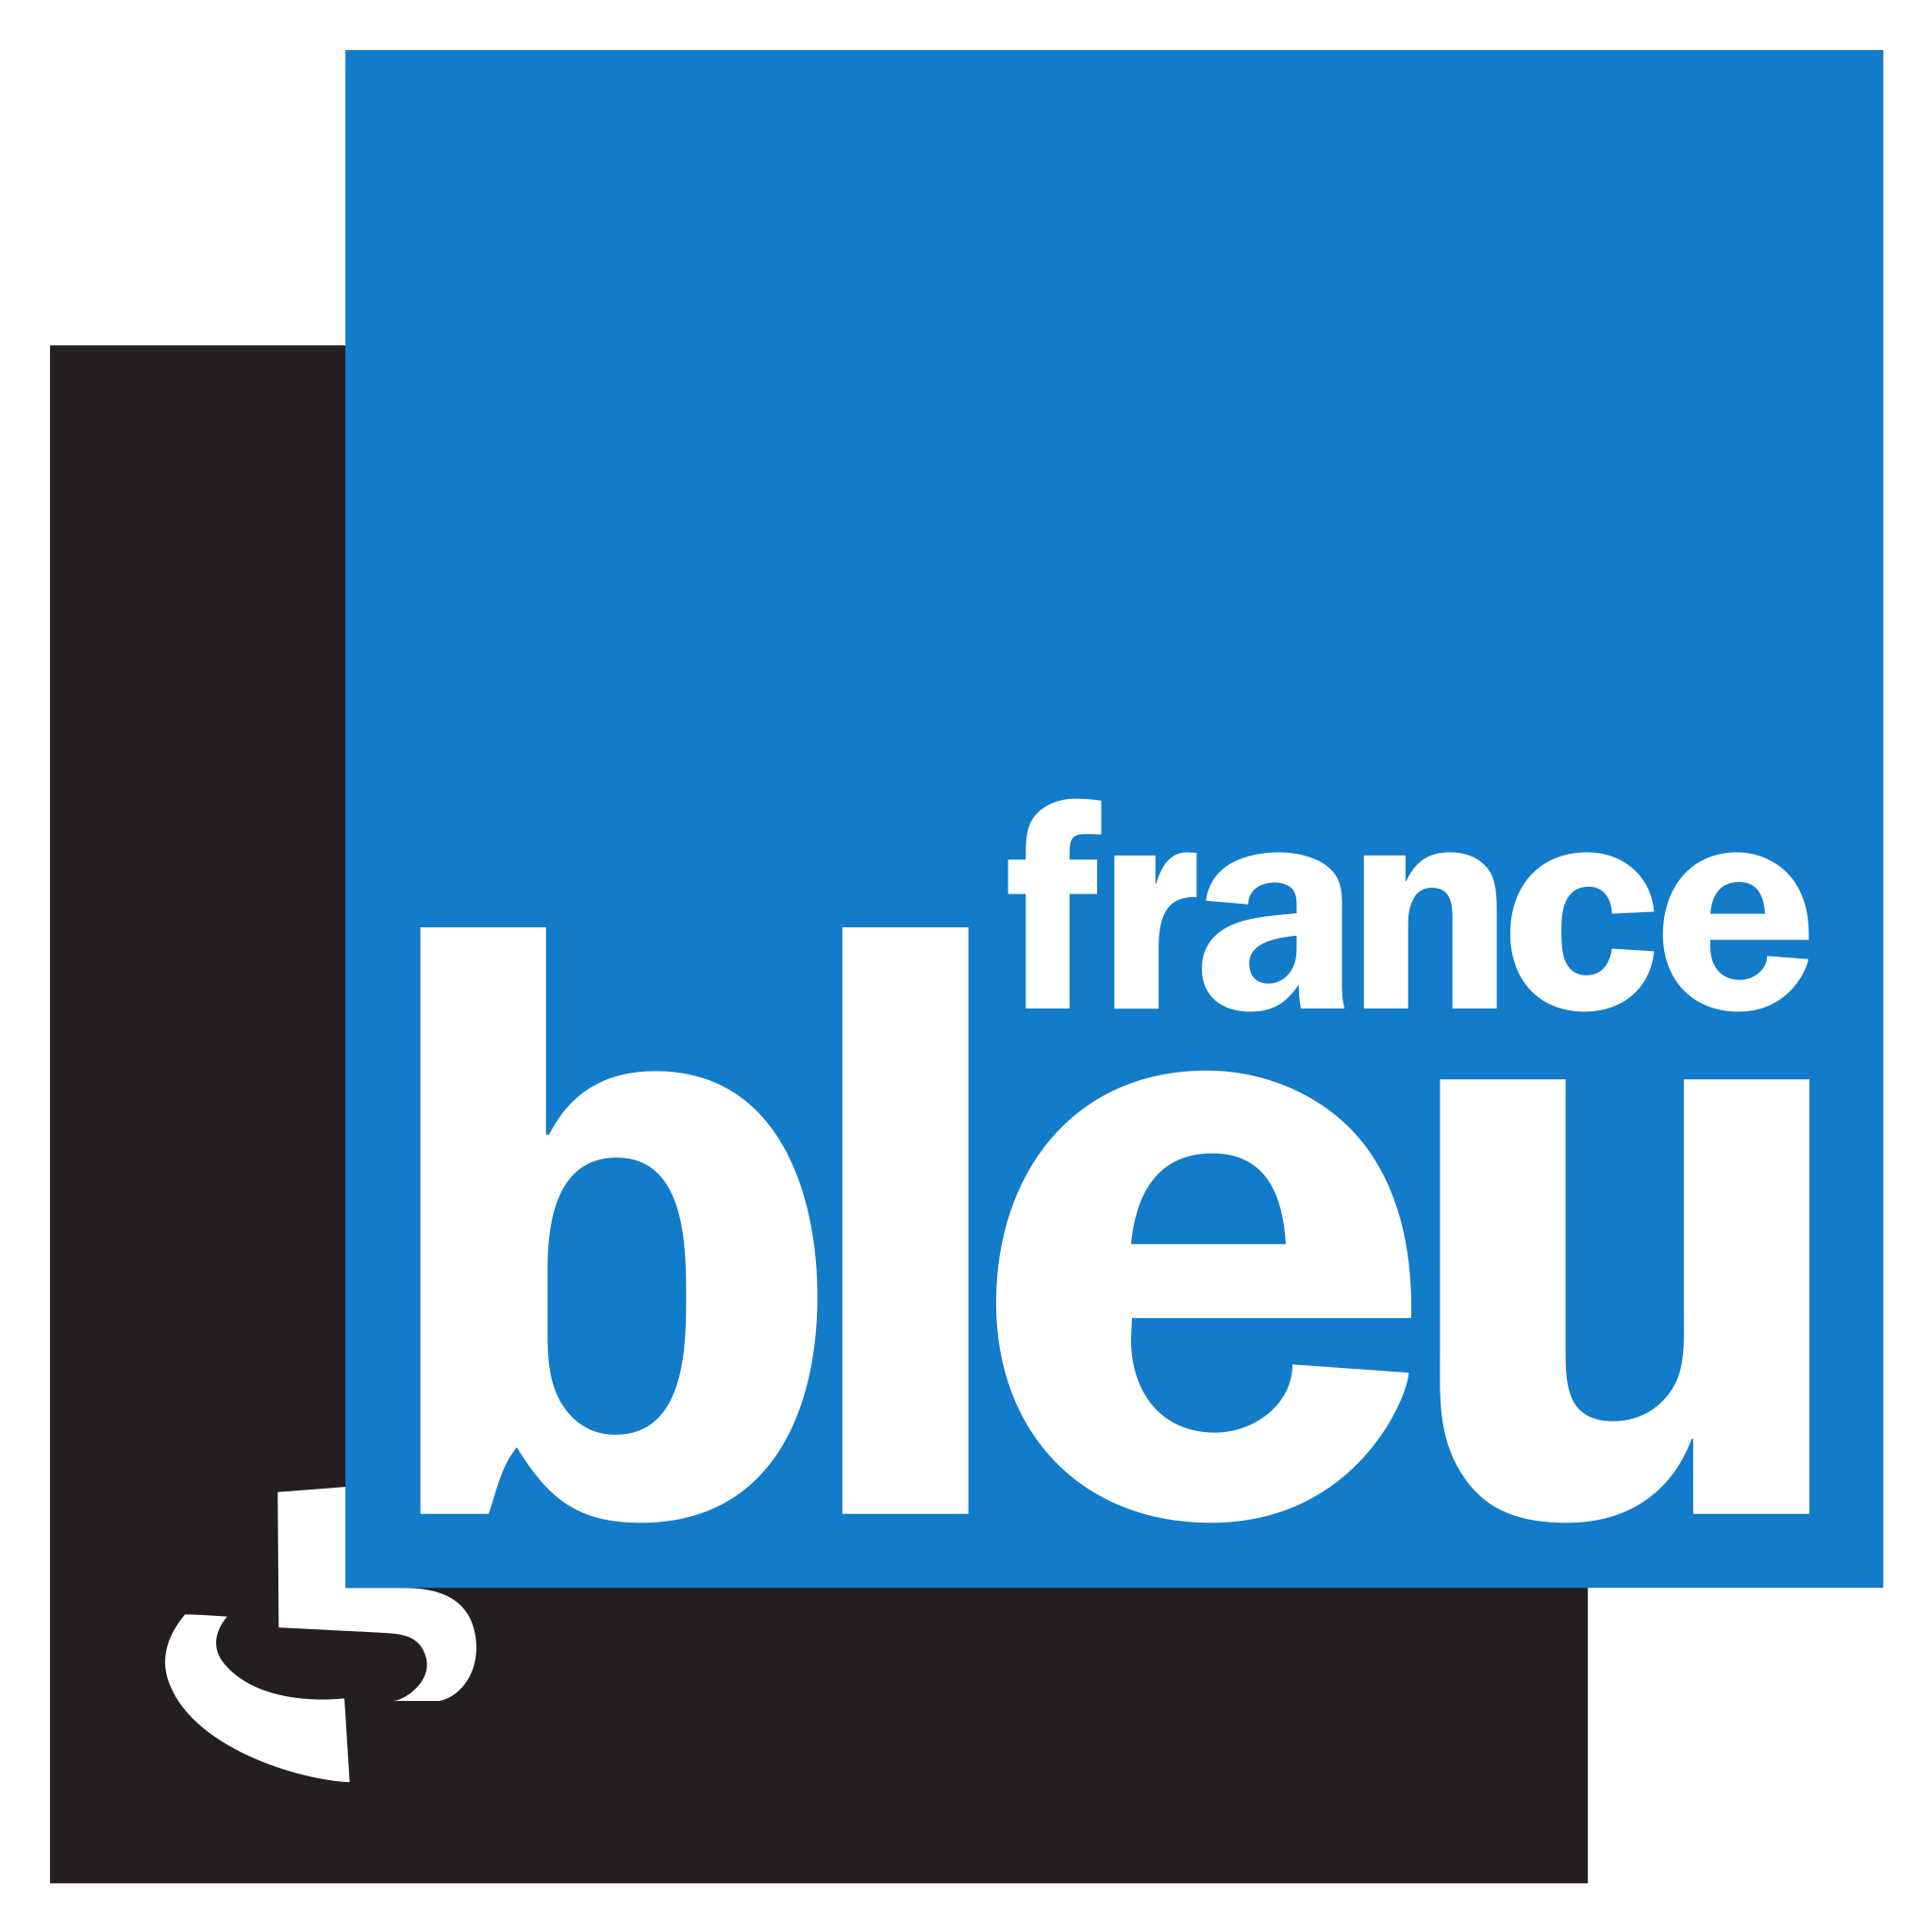 Les Français et la science 2021,  Michel DUBOIS invité de la matinale de France Bleu Lorraine